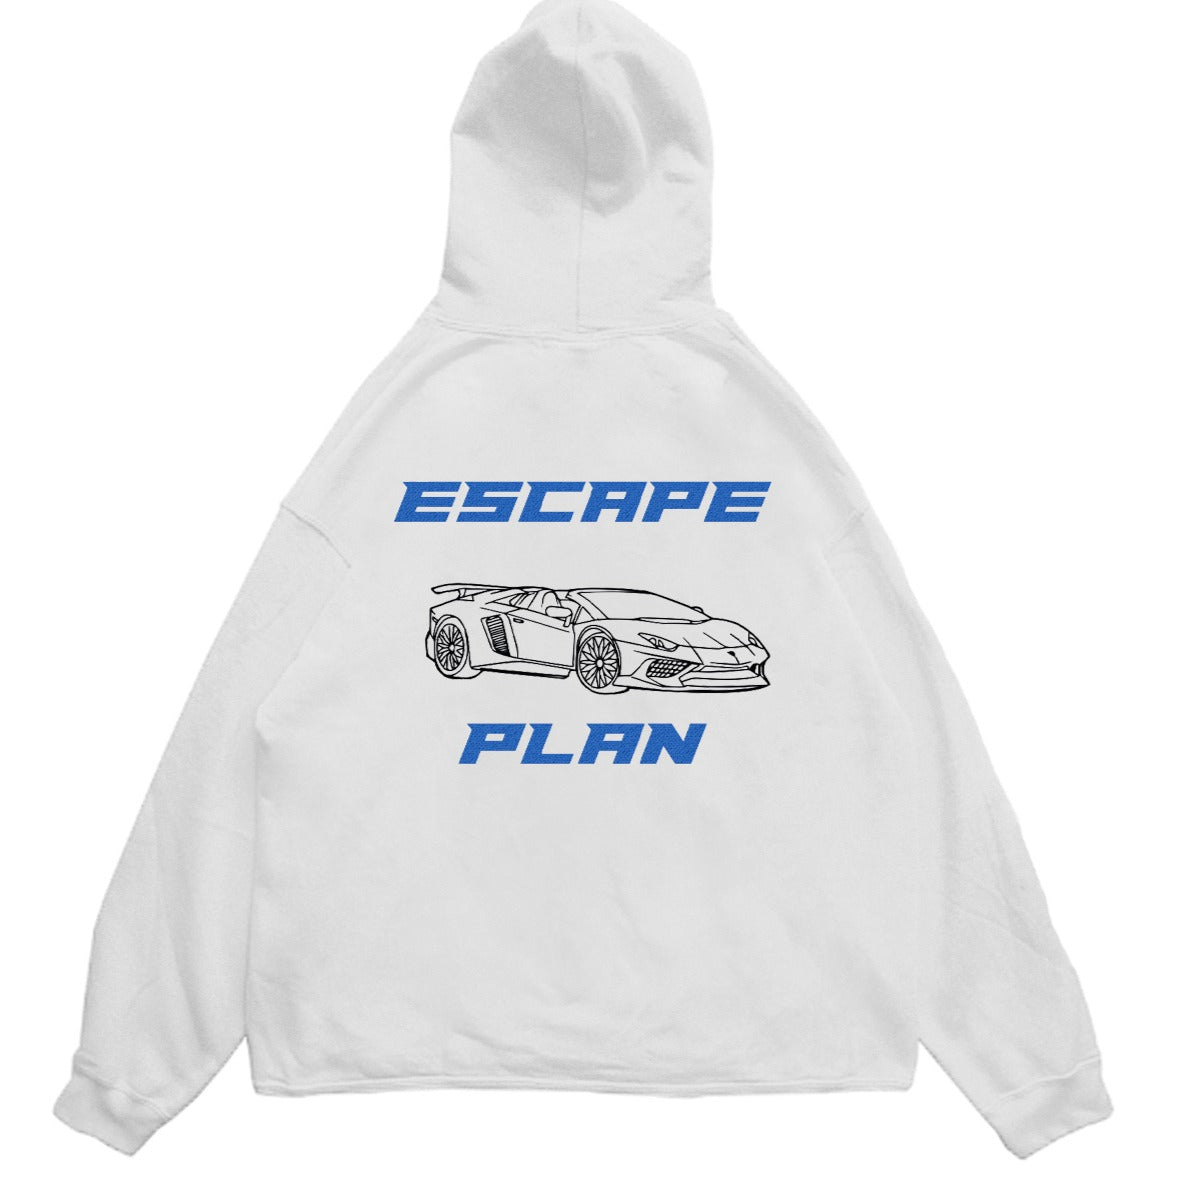 Hoodie Sweatshirt White - Racecar